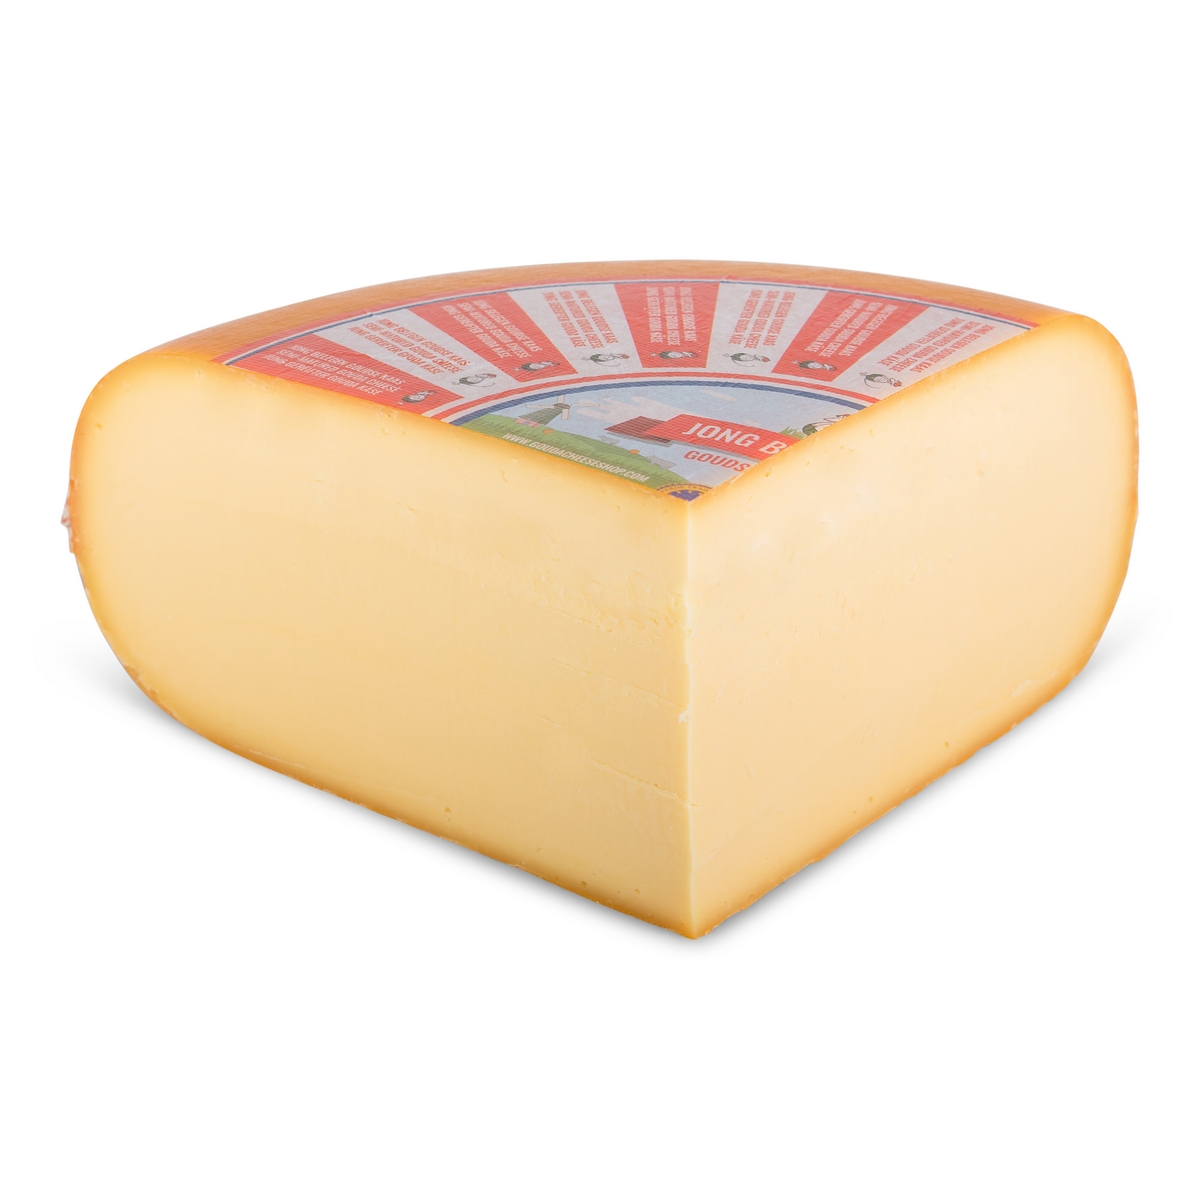 bestel 3 kg jong belegen goudse kaas gemakkelijk en snel online deze 48 kaas wordt snel thuisbezorgd levering ...